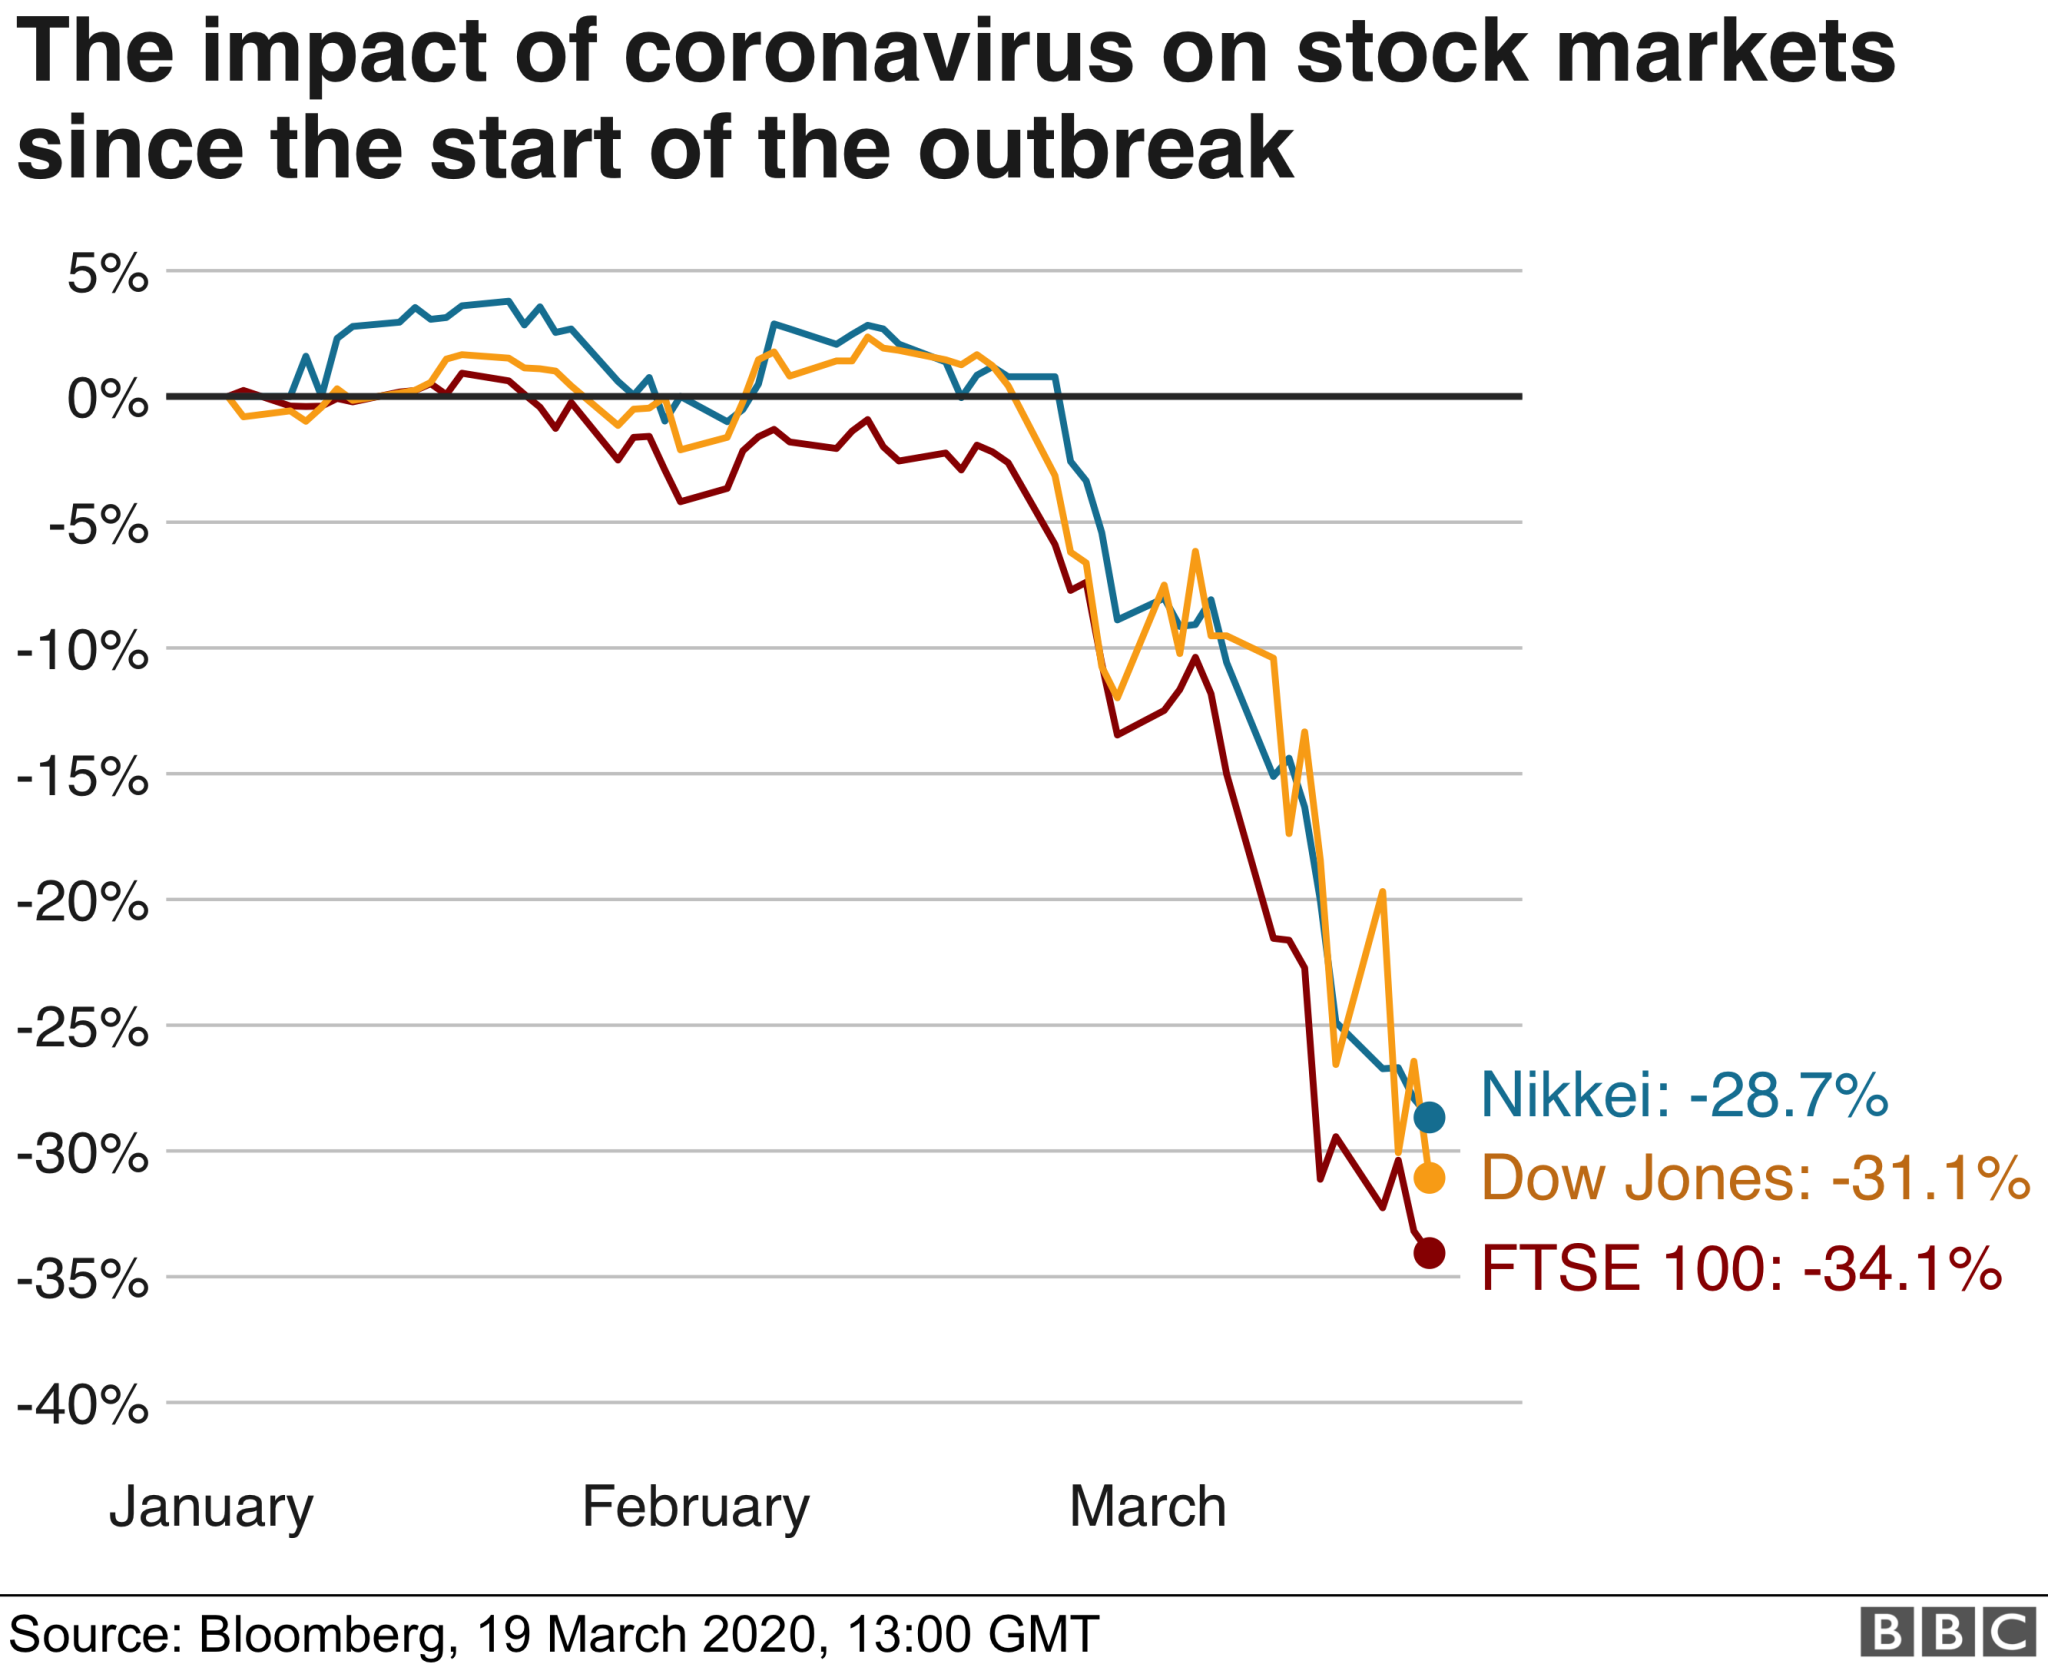 Impact of Coronavirus on Stock Markets Bloomberg